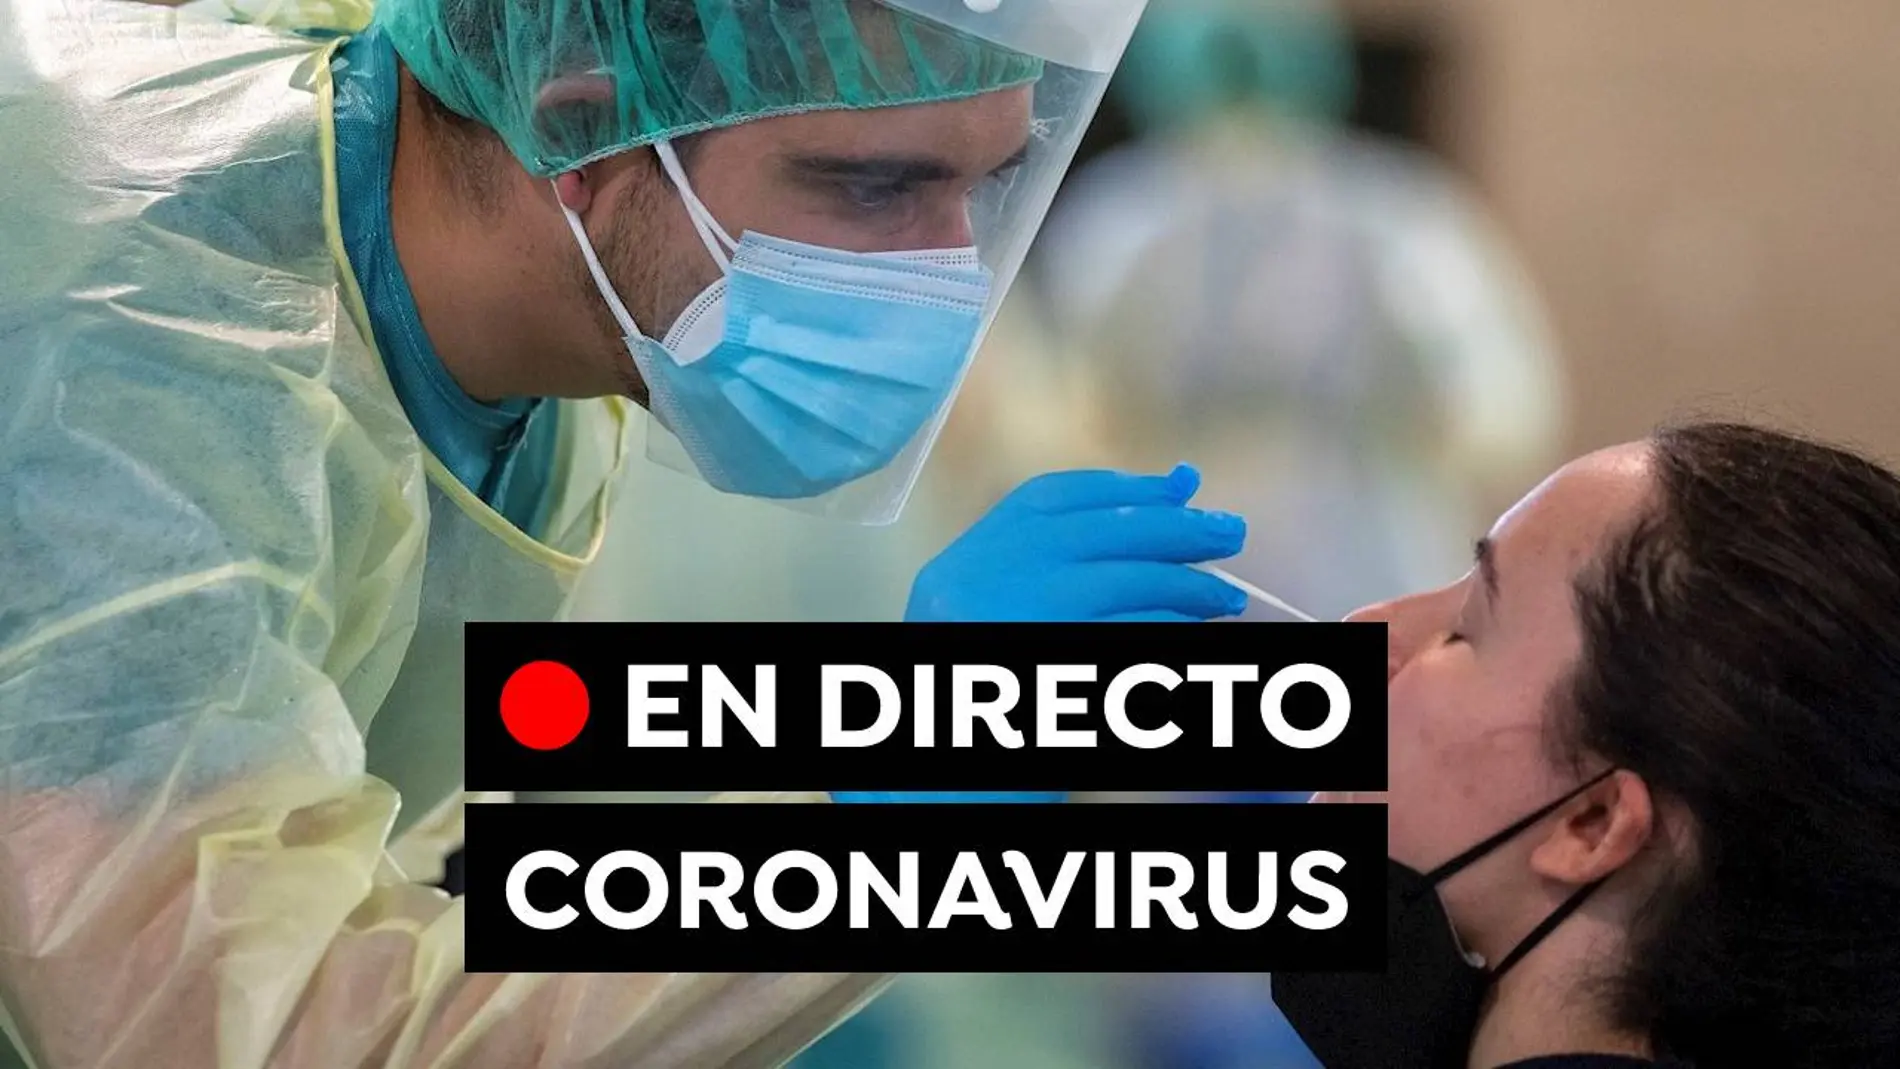 COVID-19: Confinamiento en Austria, restricciones de Navidad y última hora del coronavirus hoy, en directo